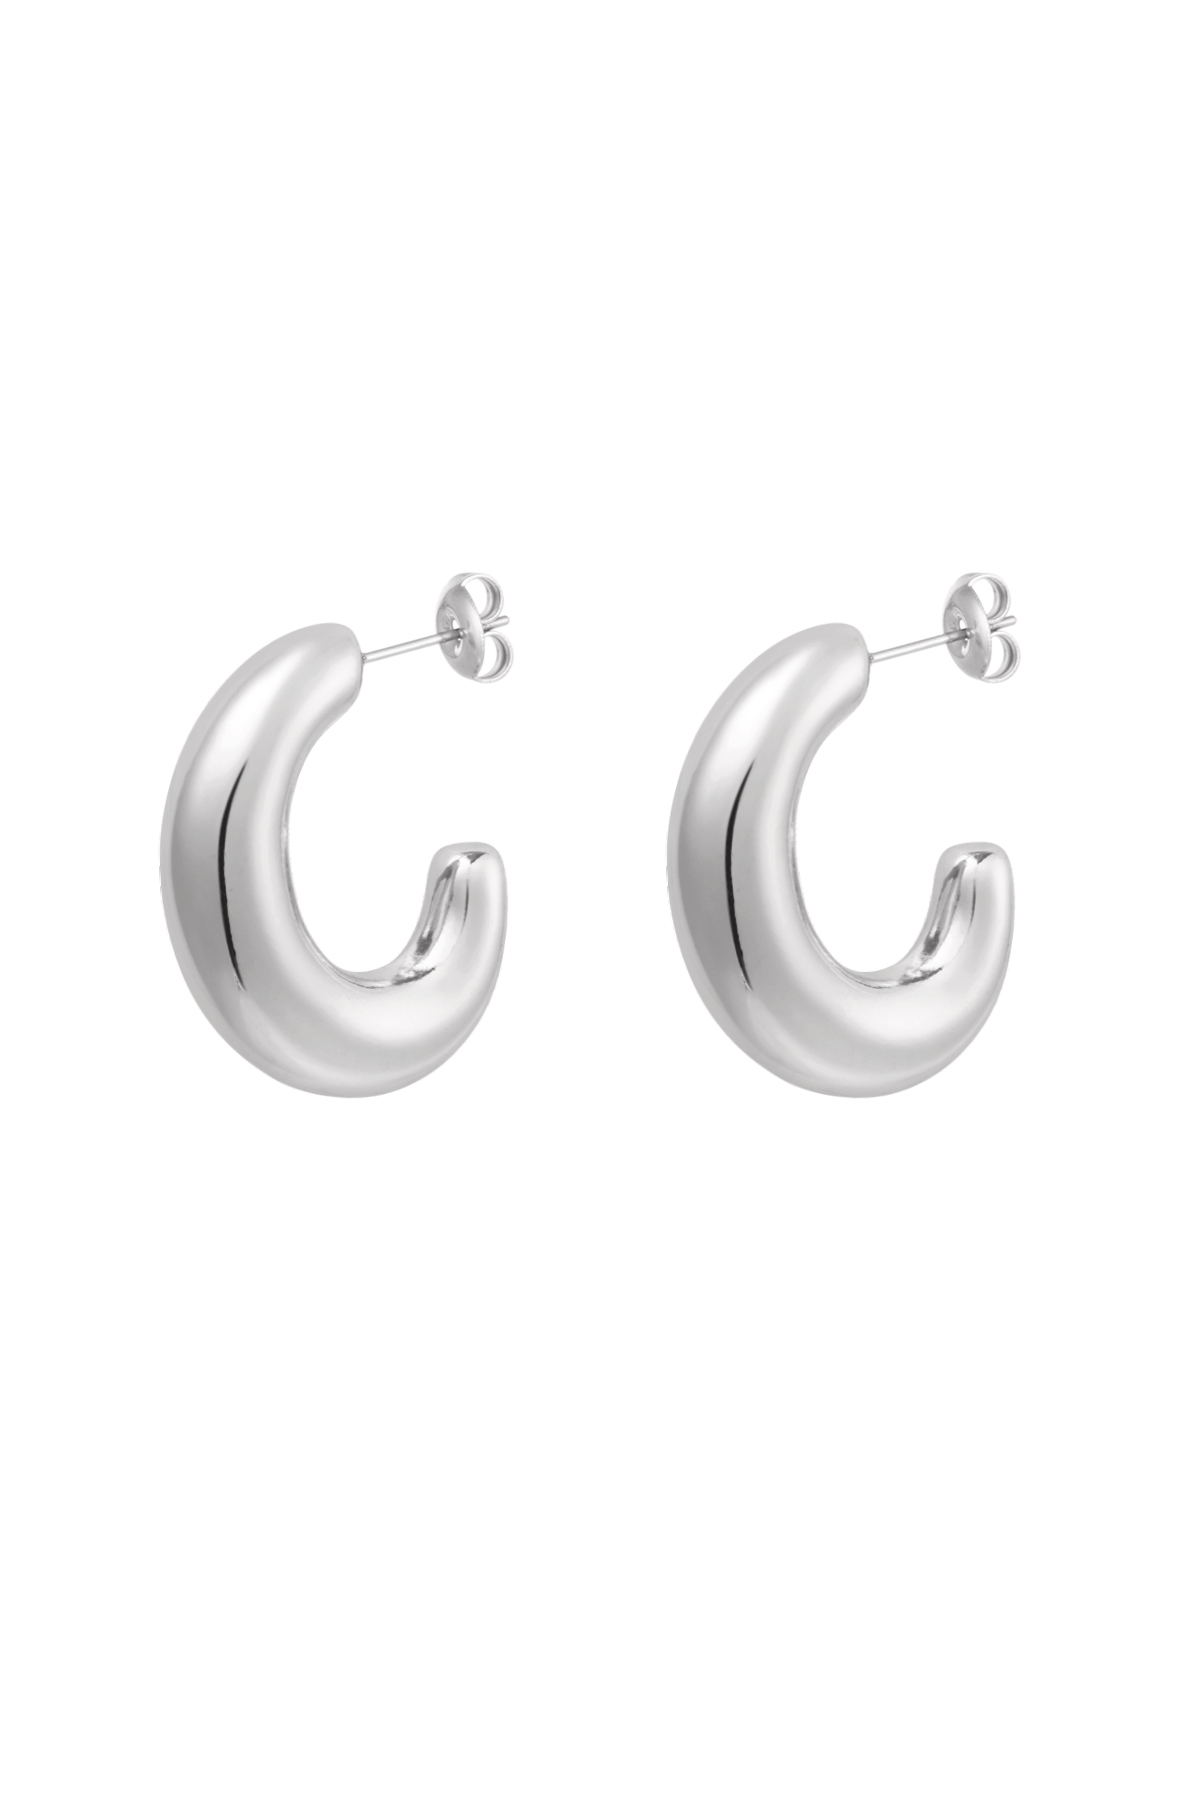 Earrings classy half moon - silver 